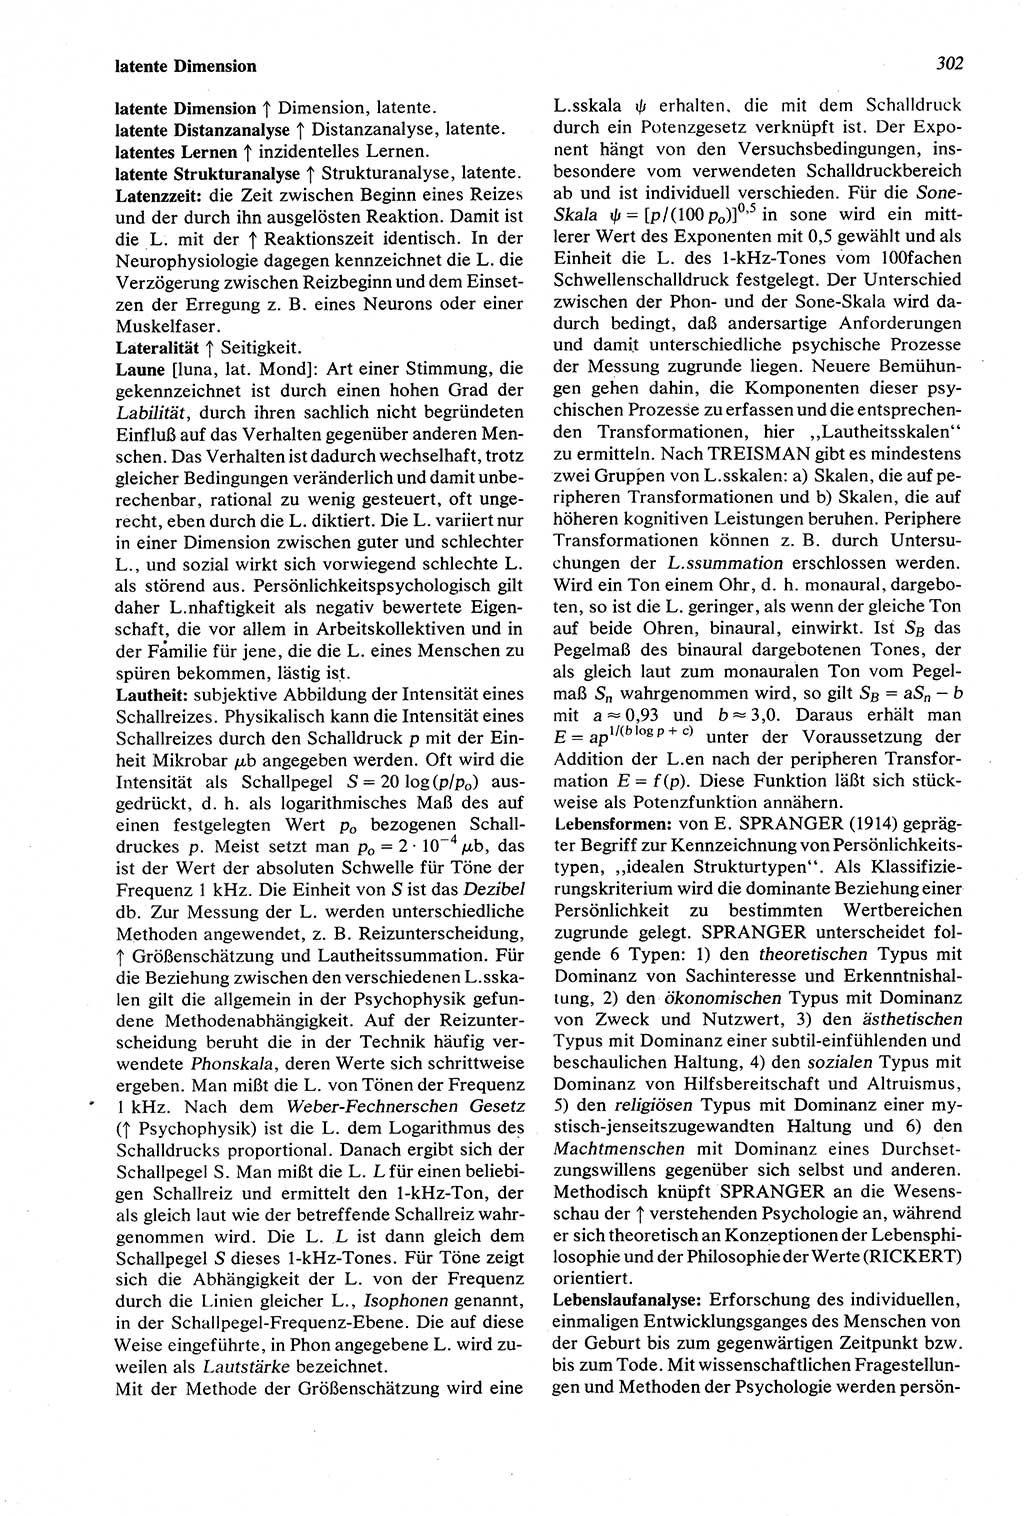 Wörterbuch der Psychologie [Deutsche Demokratische Republik (DDR)] 1976, Seite 302 (Wb. Psych. DDR 1976, S. 302)